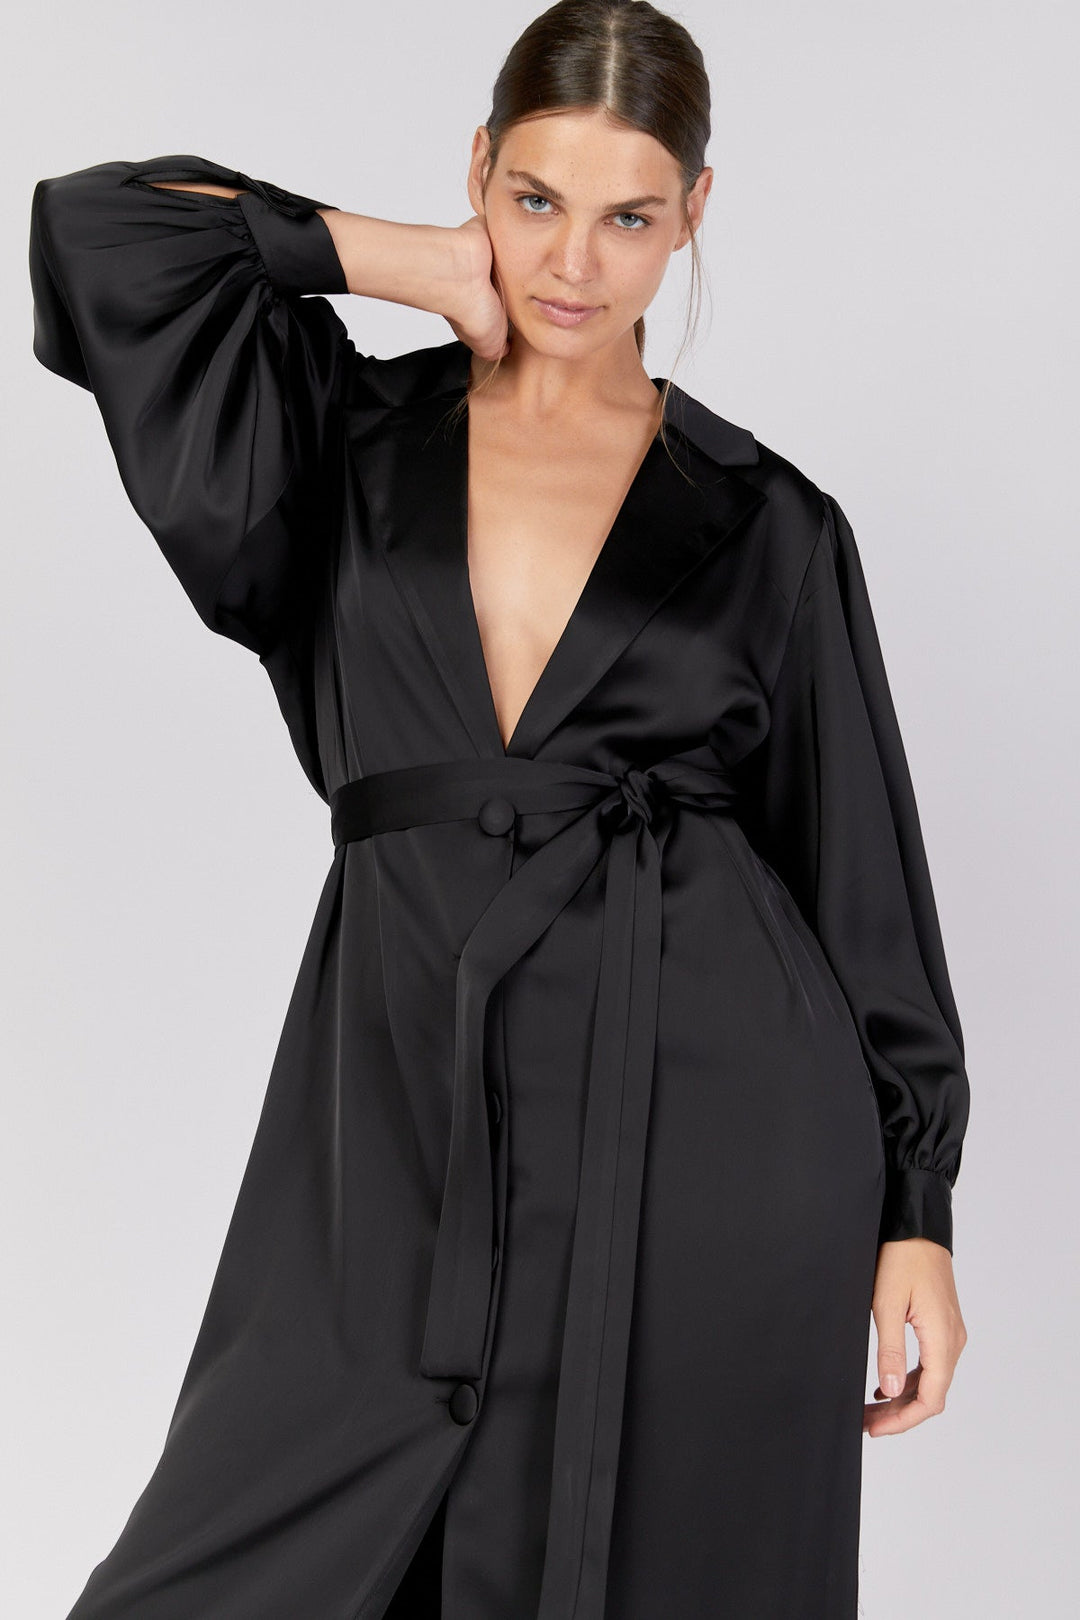 שמלת מרייט בצבע שחור - Dana Sidi